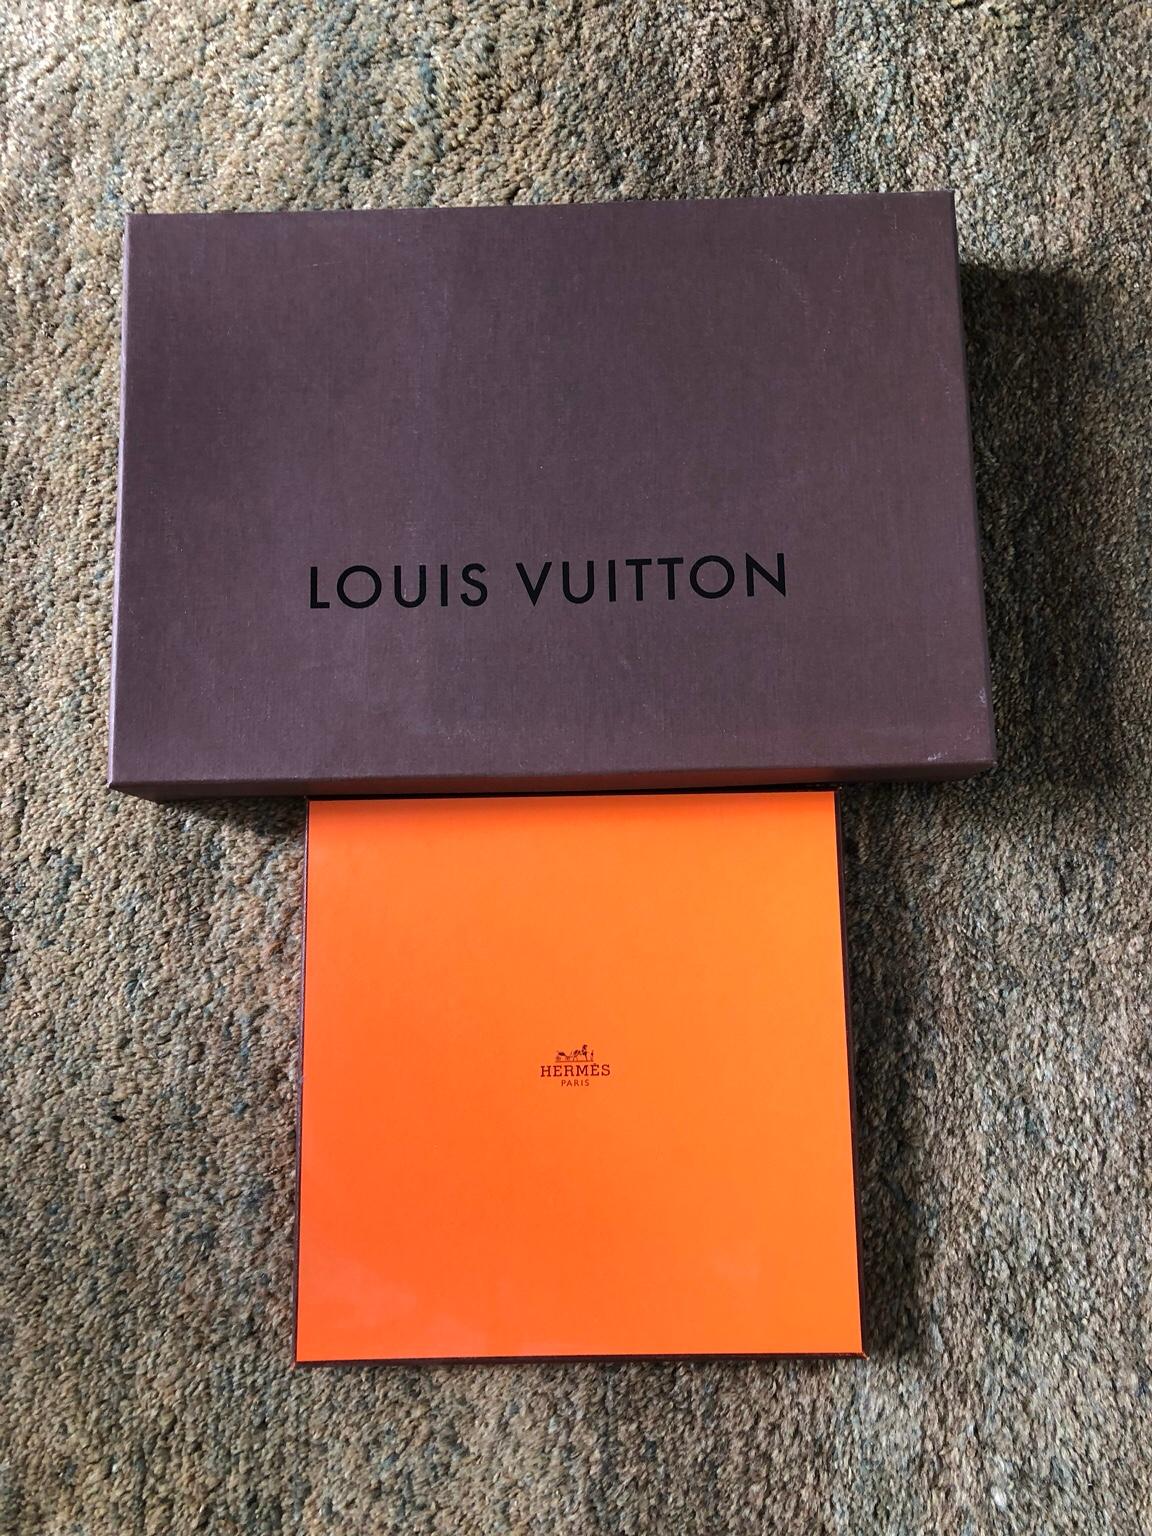 Hermes och Louis Vuitton box in 111 45 Stockholm for SEK 150.00 for sale | Shpock